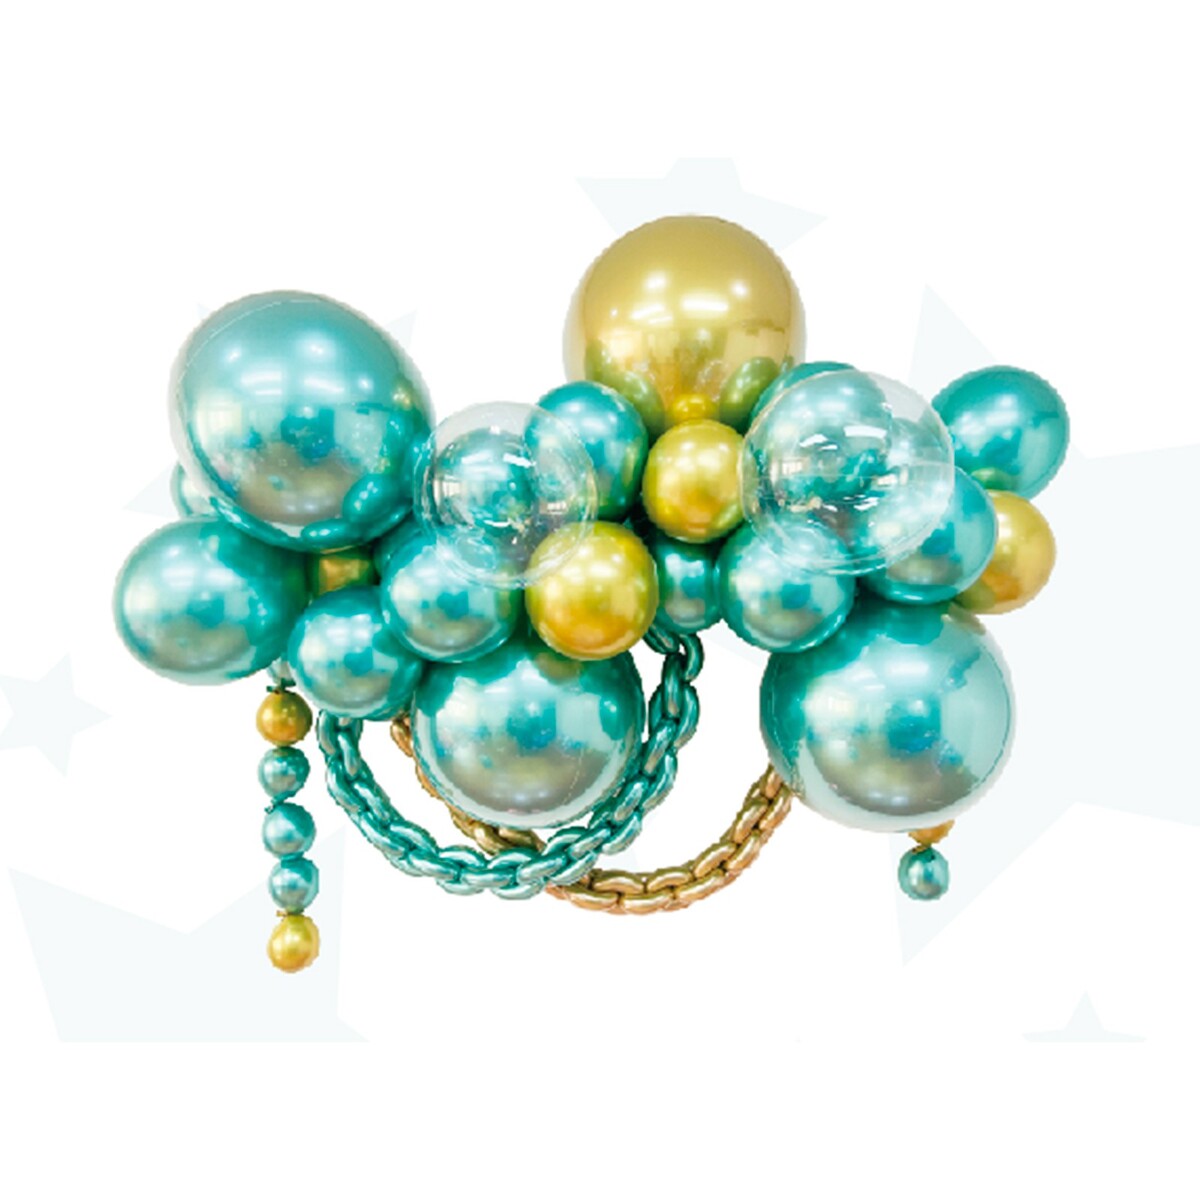 Набор для создания композиций из воздушных шаров, набор 52 шт., золото, зеленый набор для создания композиций из воздушных шаров набор 52 шт серебро сирененвый